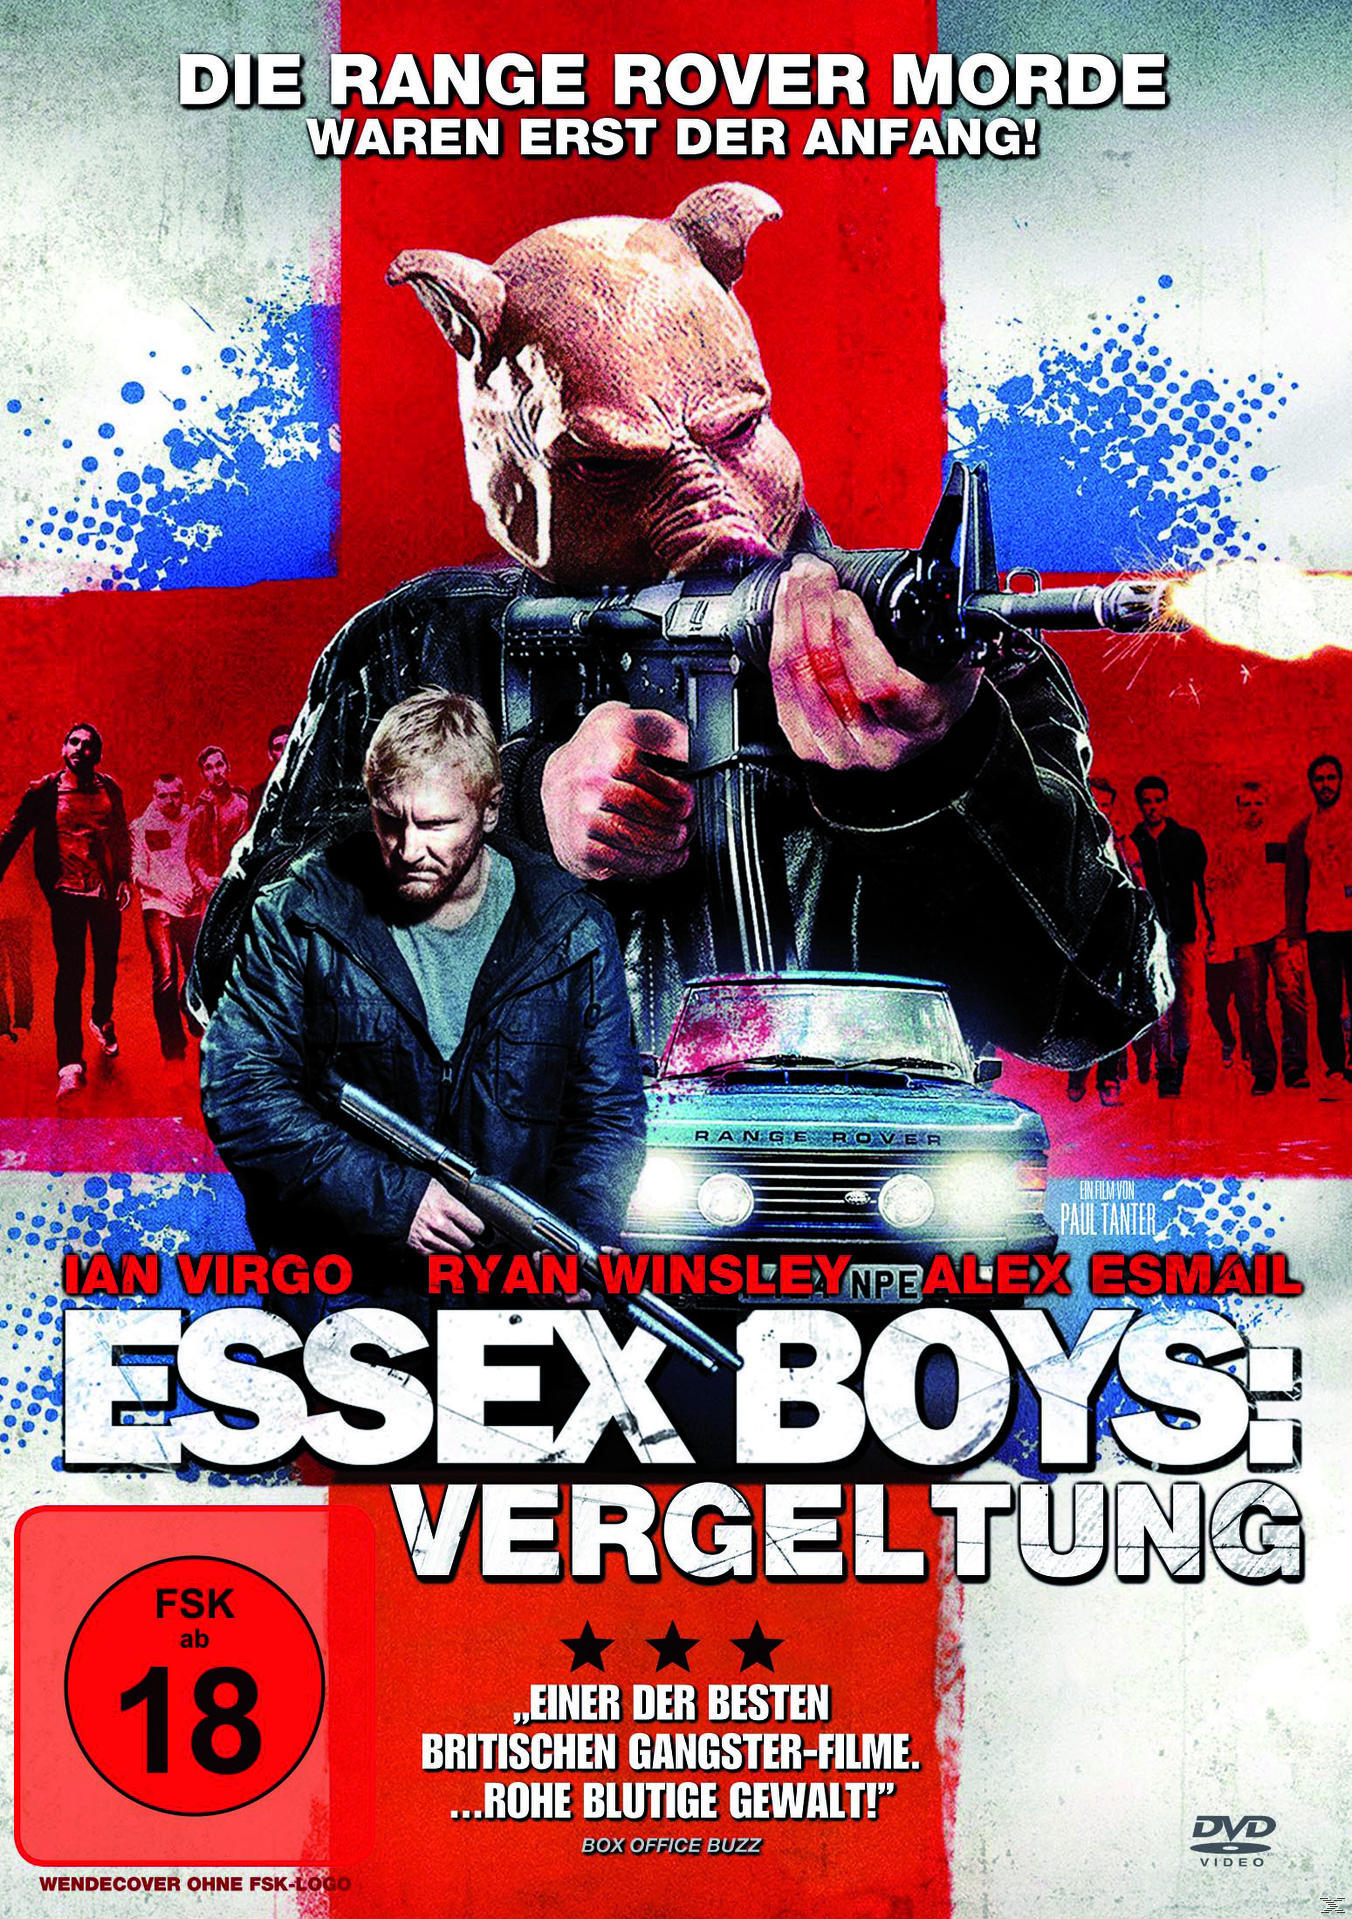 Essex Boys: Vergeltung DVD